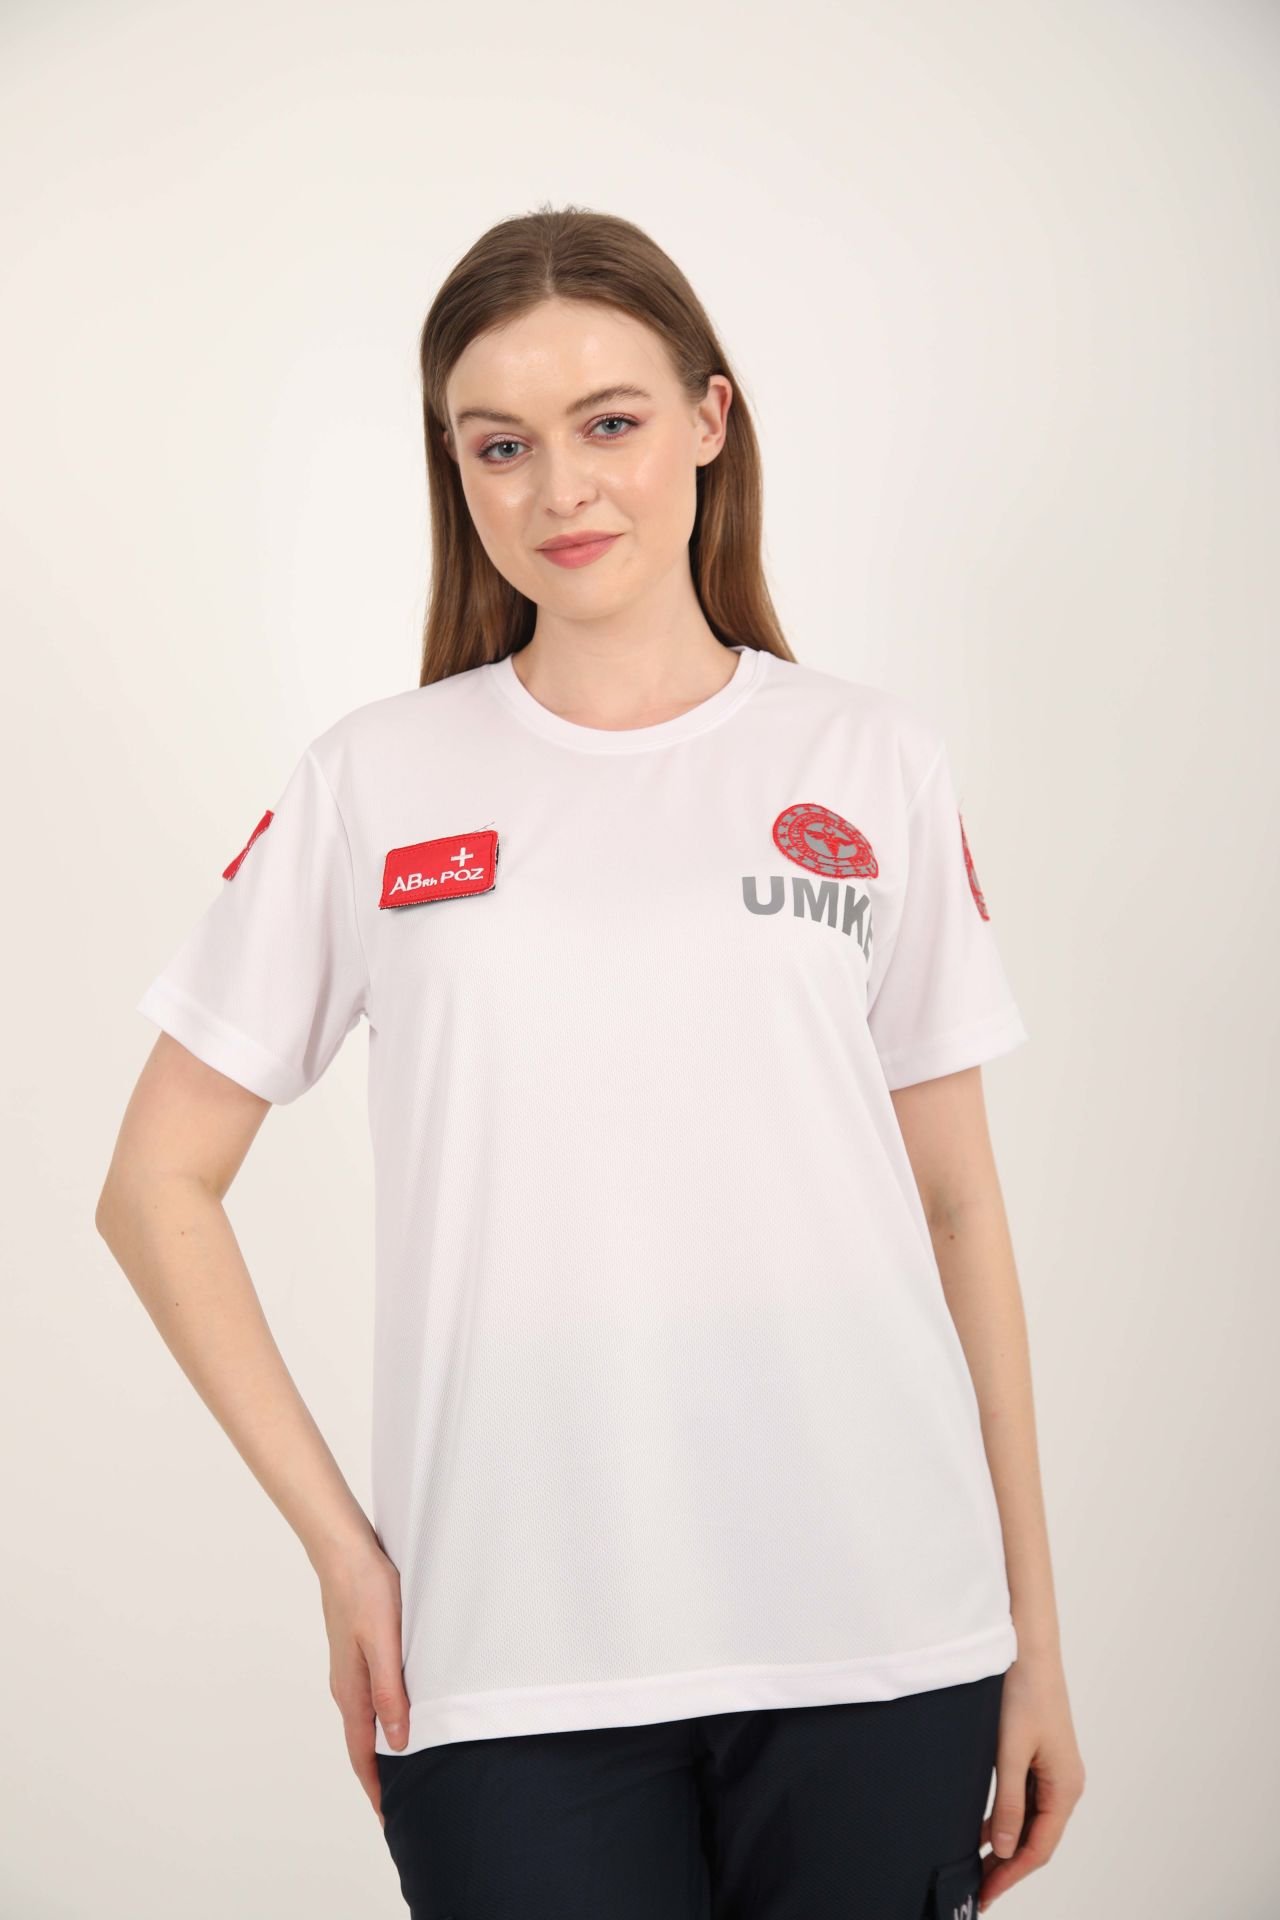 Yeni UMKE Beyaz Comfort Sıfır Yaka T-shirt(Unisex)